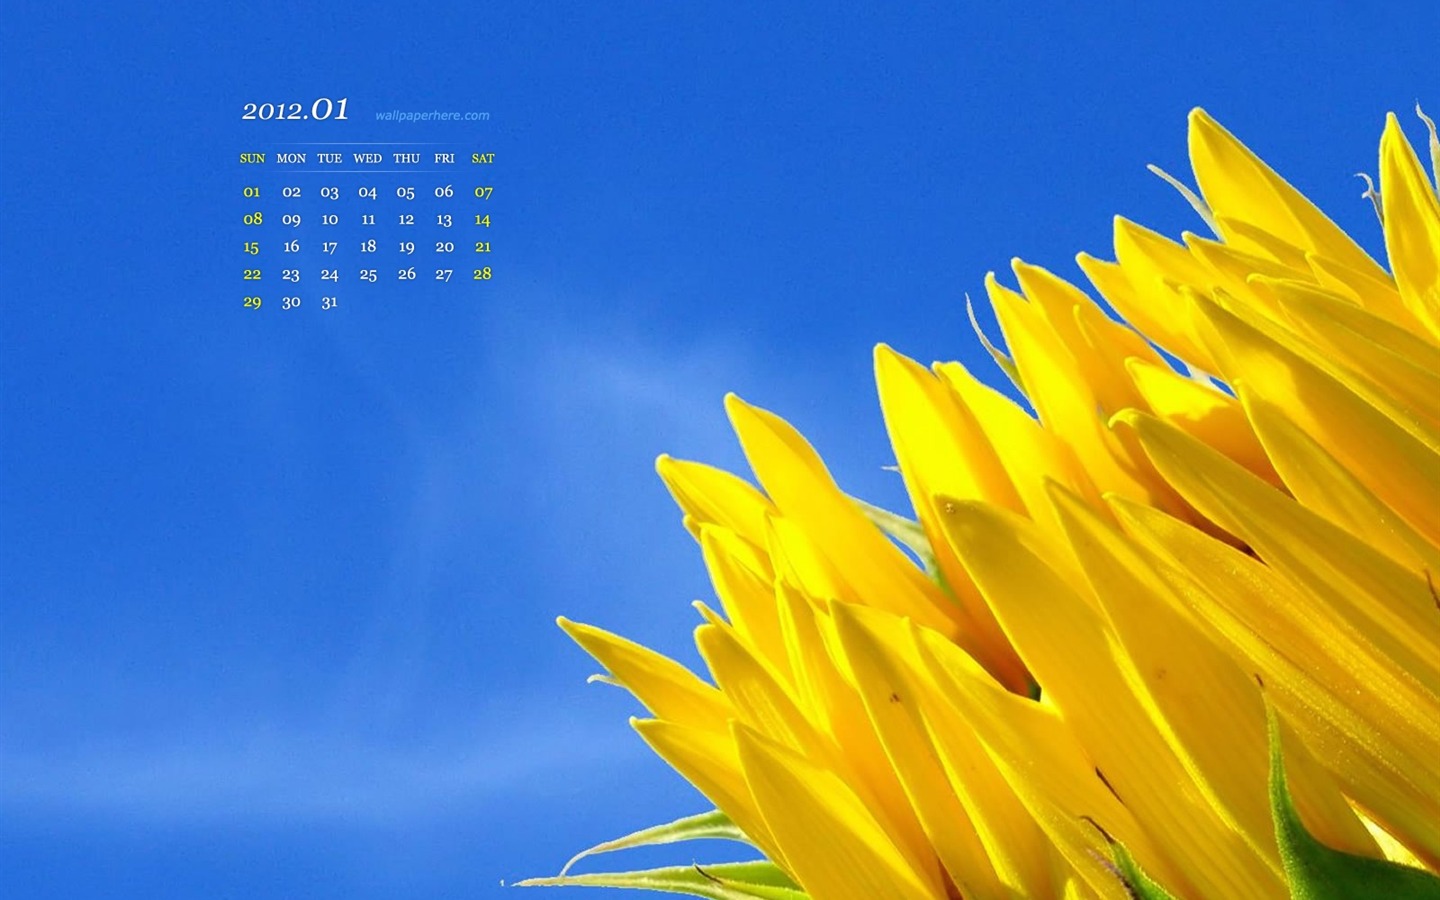 Flower HD January 2012 calendar desktop themes wallpaper